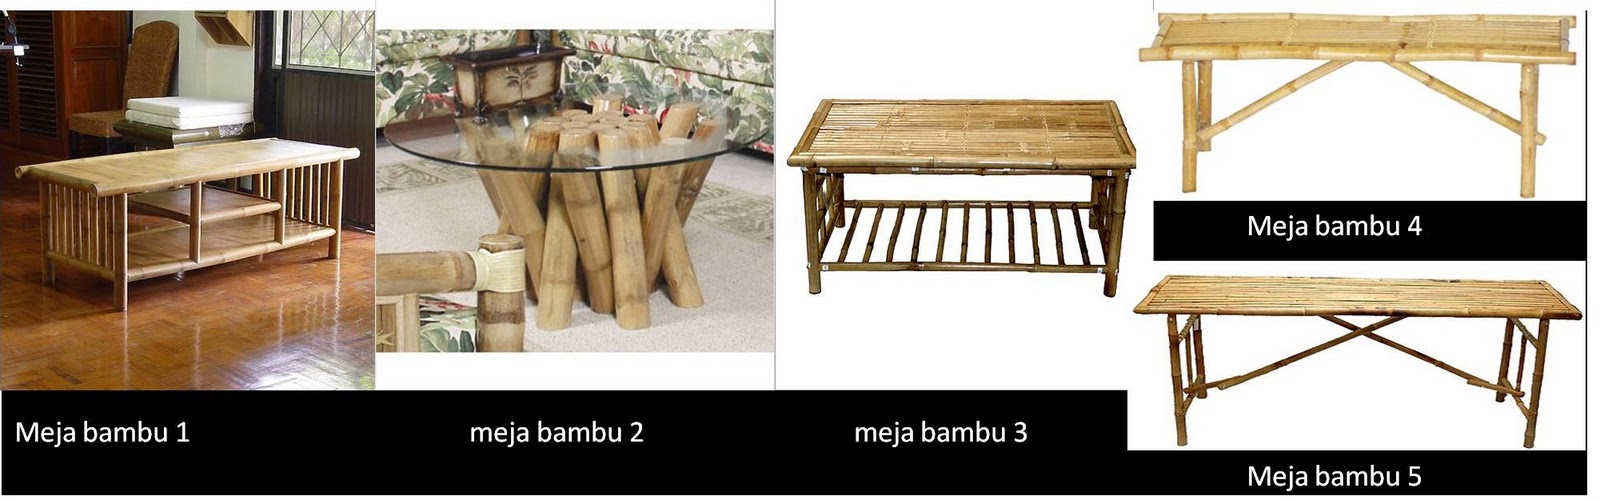 Taman Bambu Nusantara: Aneka Model Furnitur dari Bambu